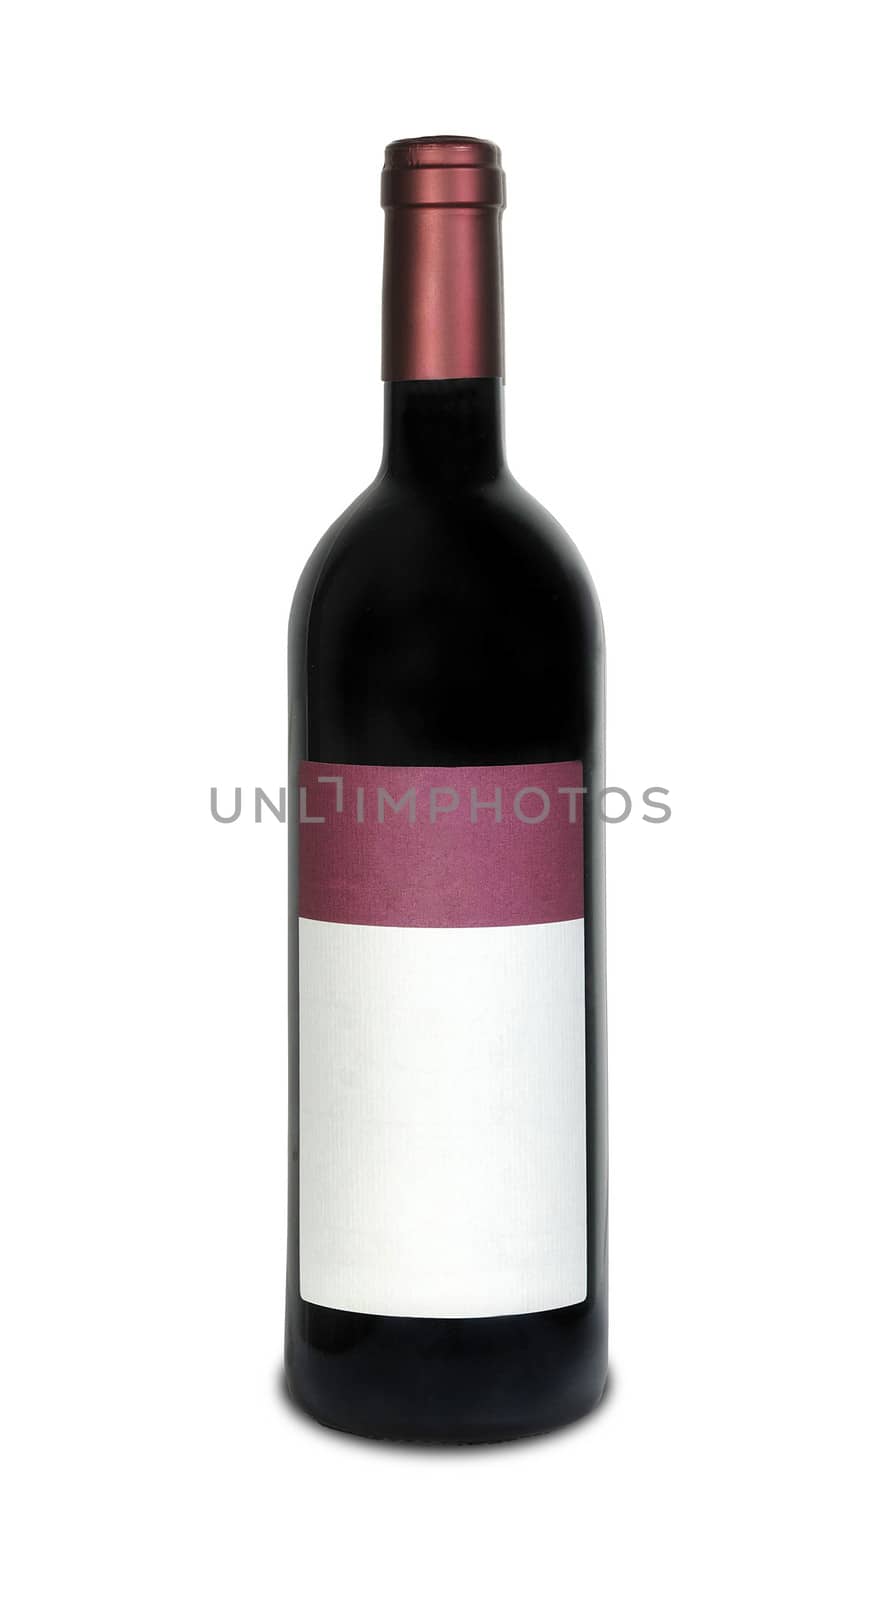 red wine bottle by shutswis